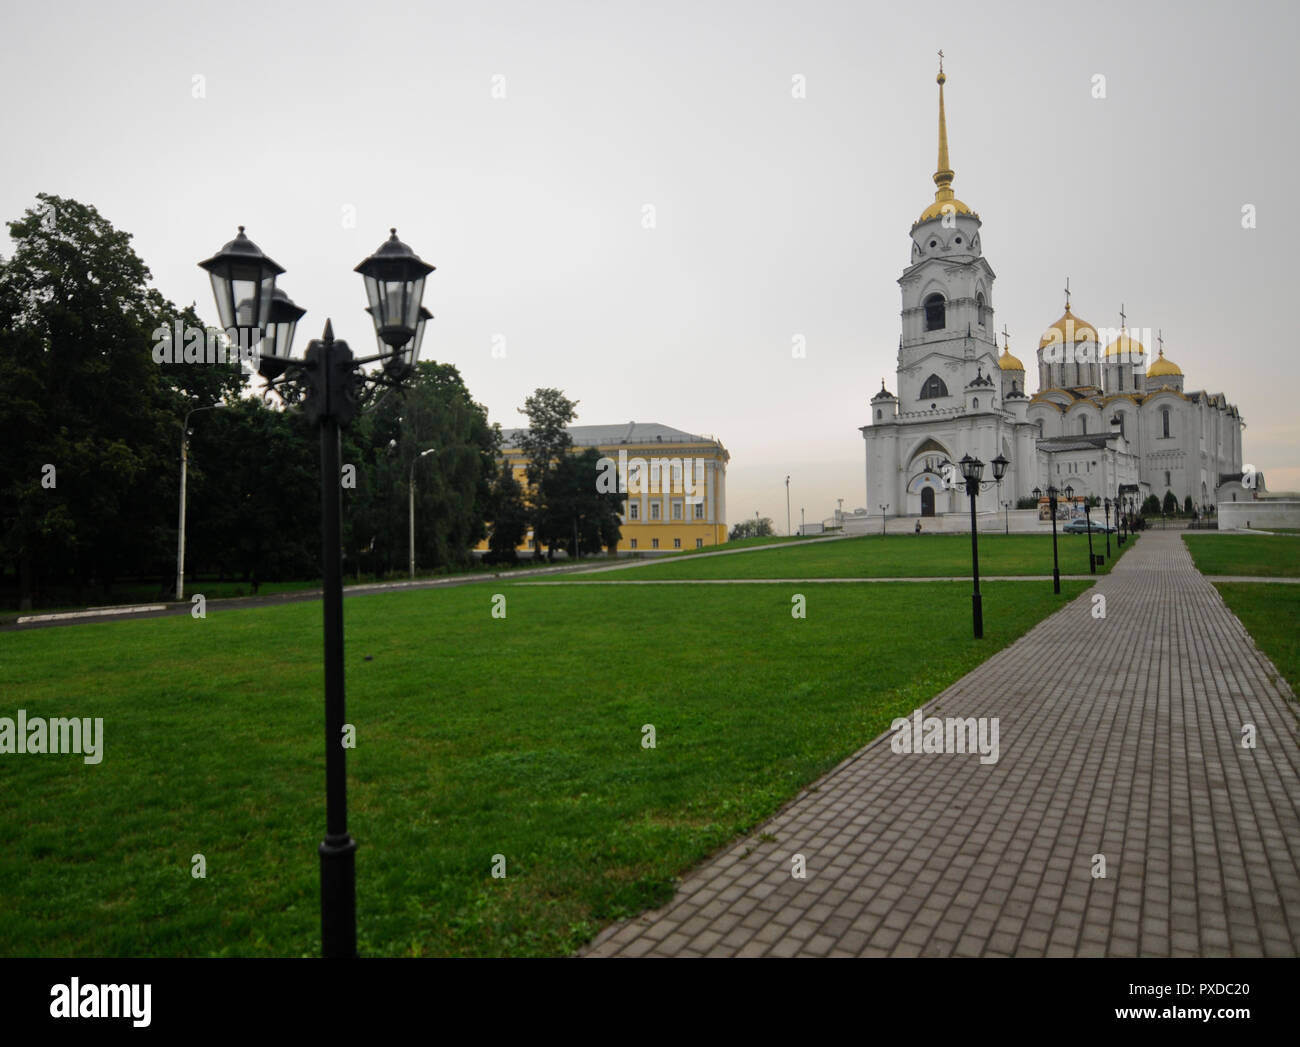 Cathédrale de la Dormition, Vladimir, Russie Banque D'Images